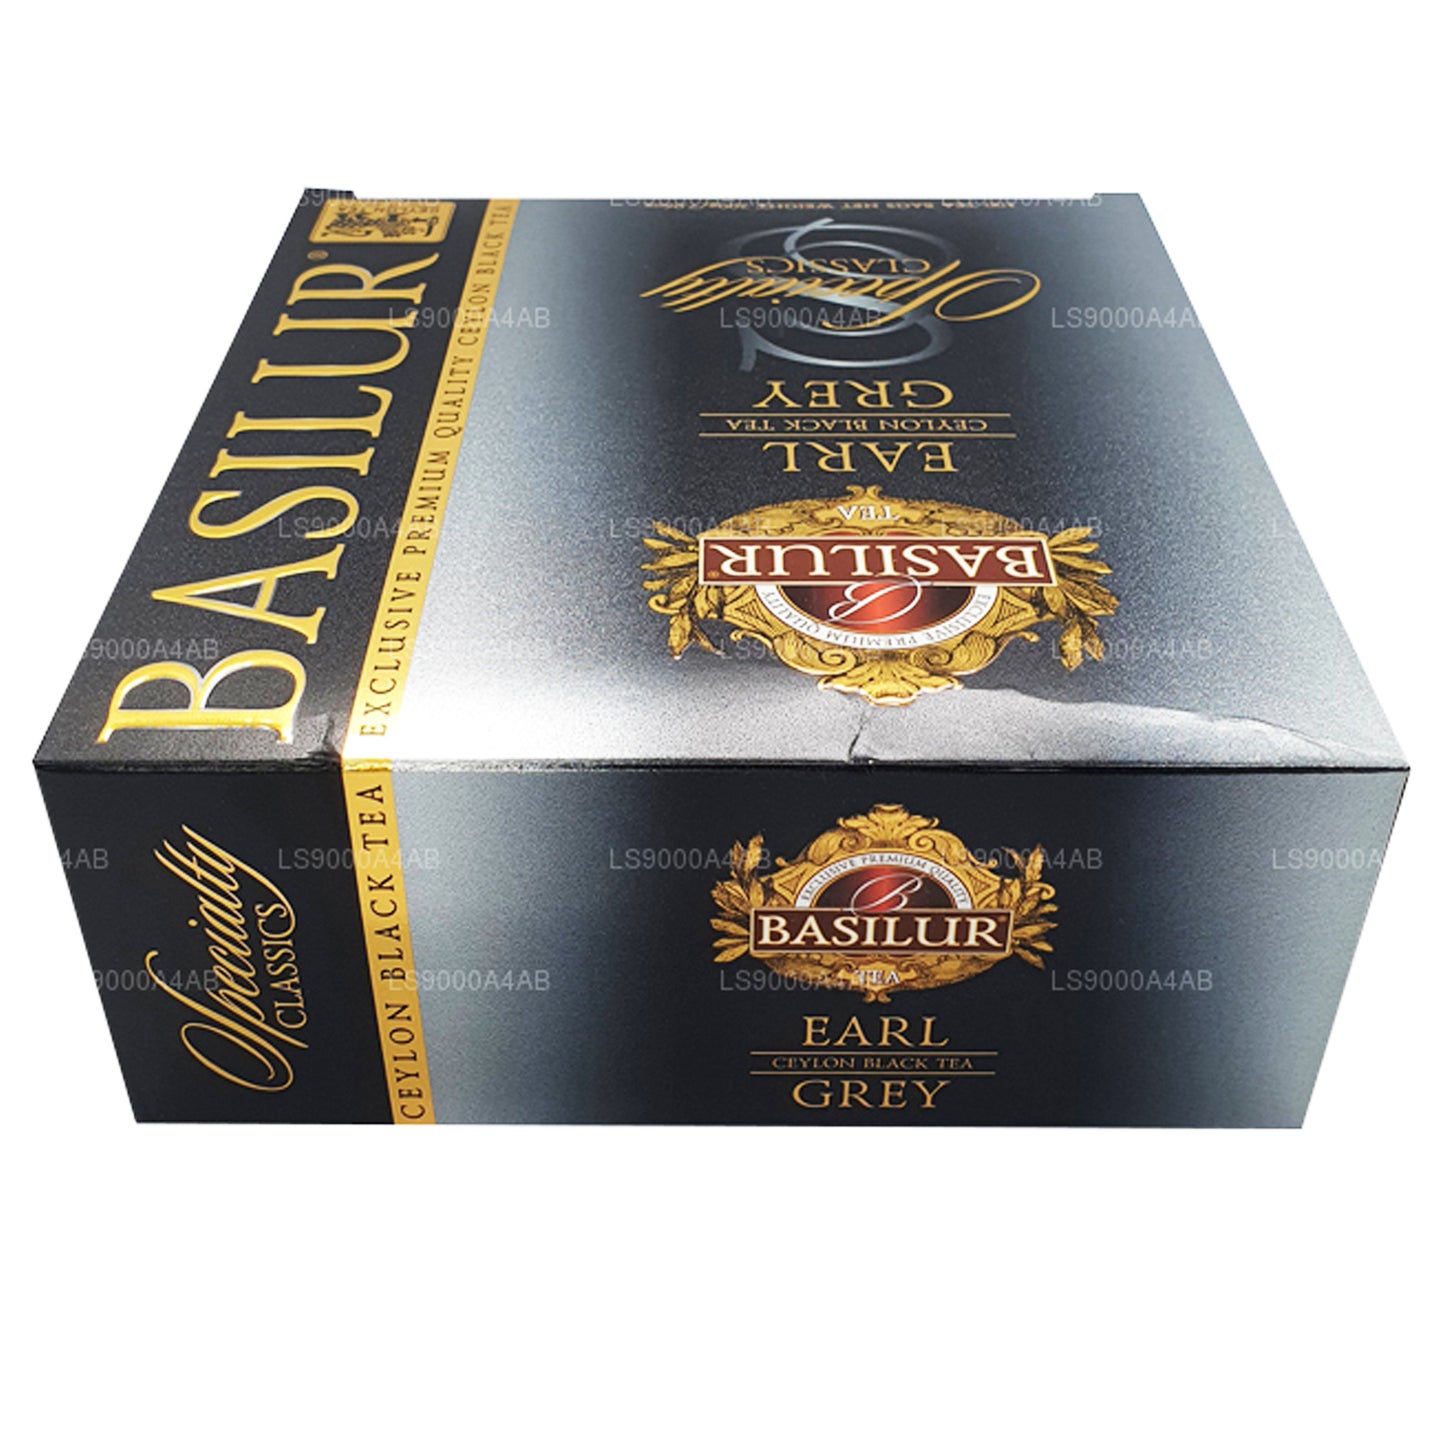 Basilur Speciality Classics Earl Grey Seylan Siyah Çay (200g) 100 Çay Poşeti